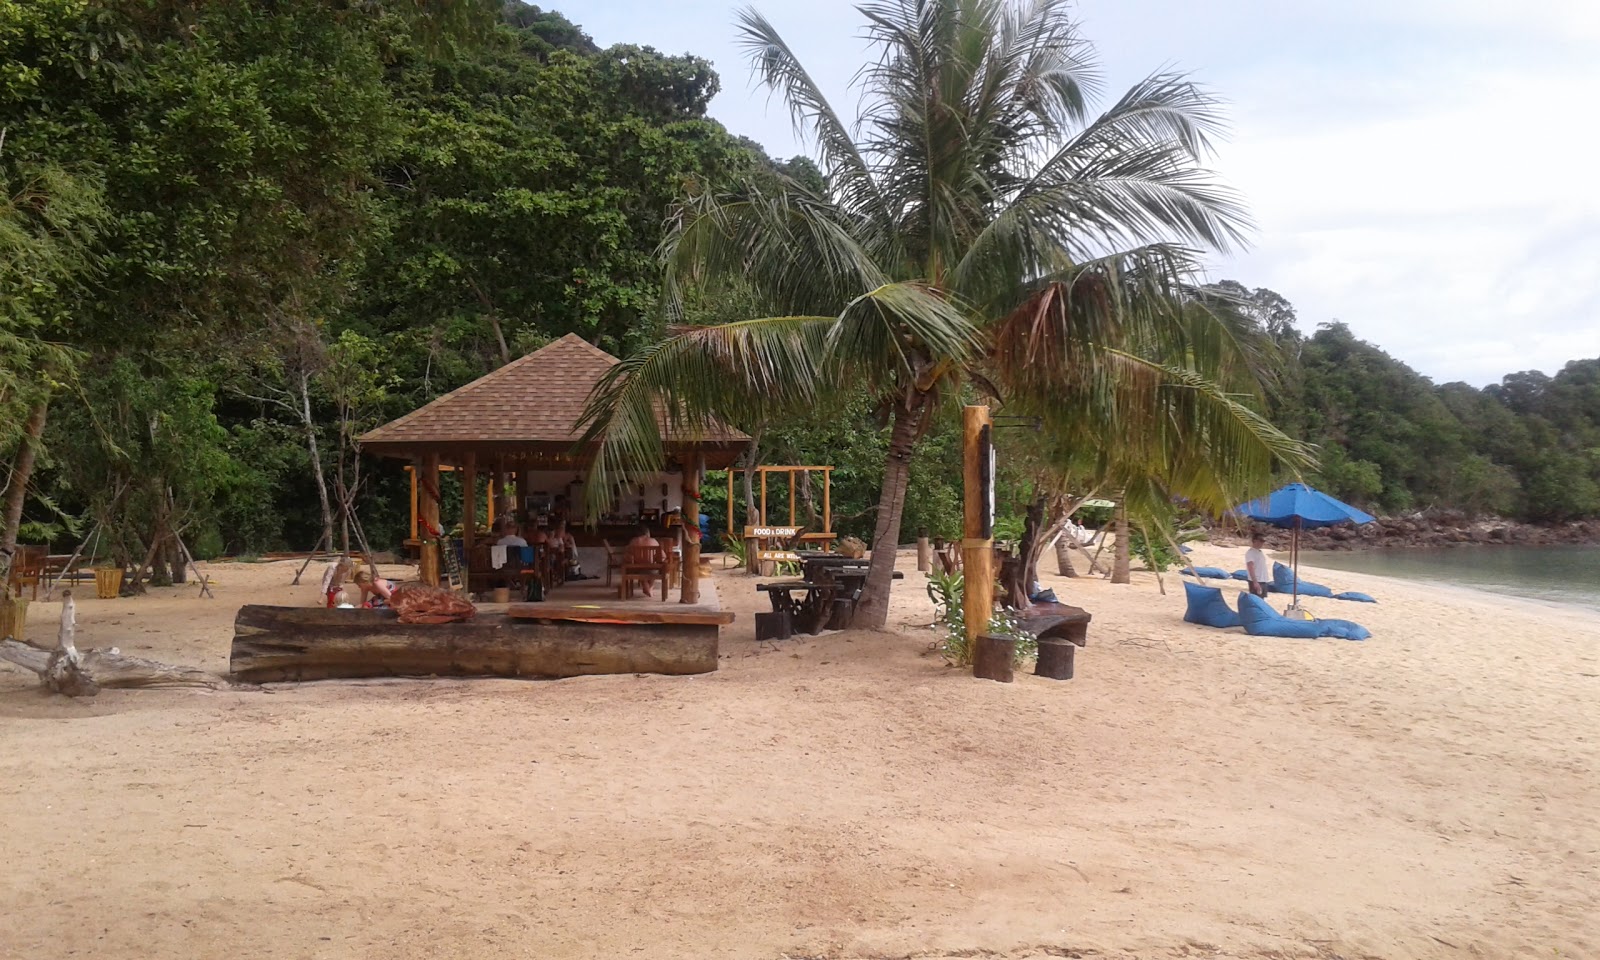 Fotografija Koh Ngai Paradise Beach priljubljeno mesto med poznavalci sprostitve